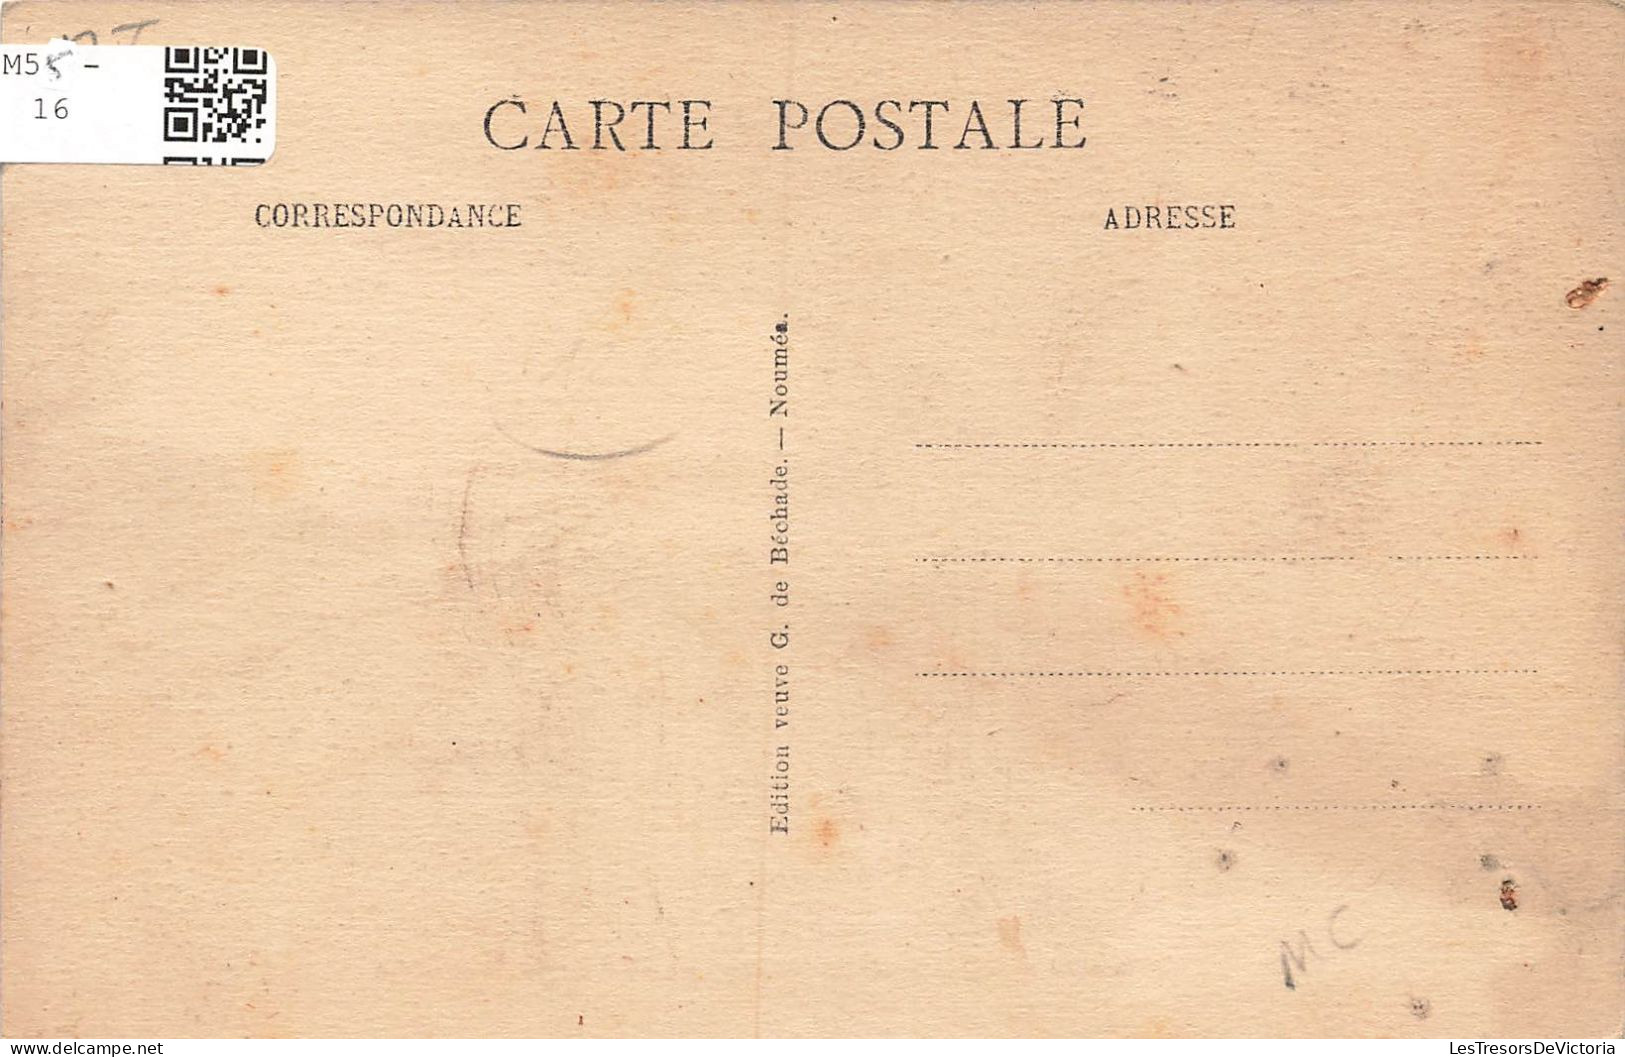 NOUVELLE CALEDONIE - Agricole - Le Café - La Cueillette - Carte Postale Ancienne - New Caledonia